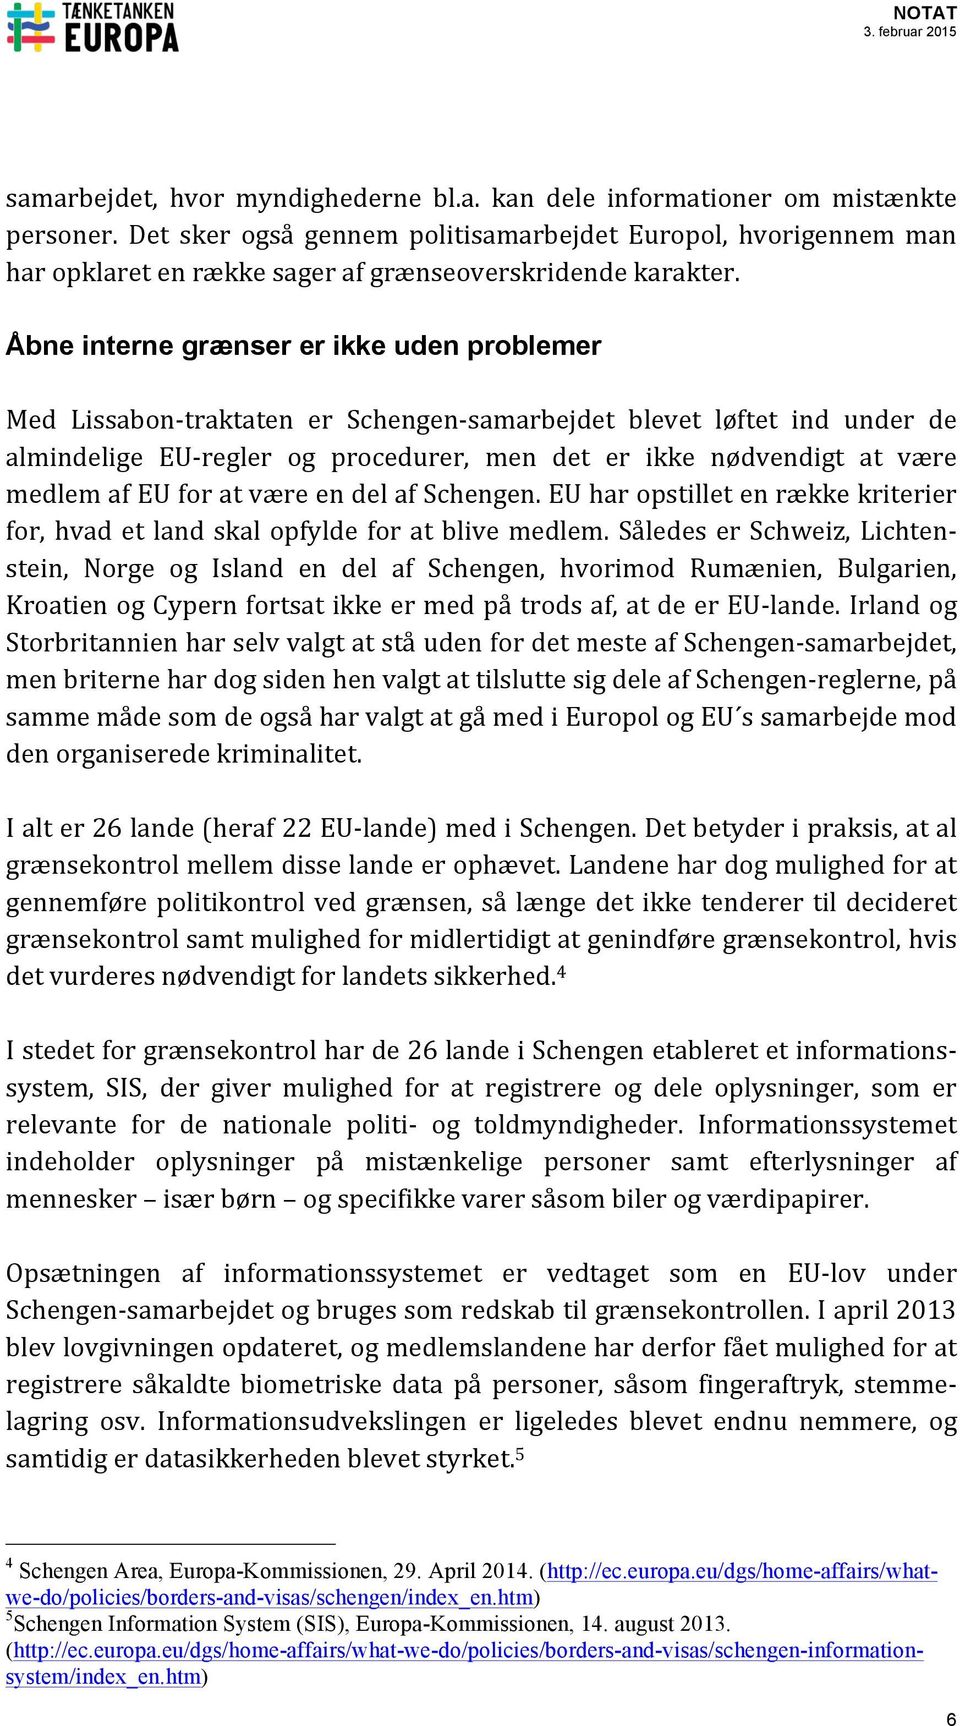 Åbne interne grænser er ikke uden problemer Med Lissabon- traktaten er Schengen- samarbejdet blevet løftet ind under de almindelige EU- regler og procedurer, men det er ikke nødvendigt at være medlem